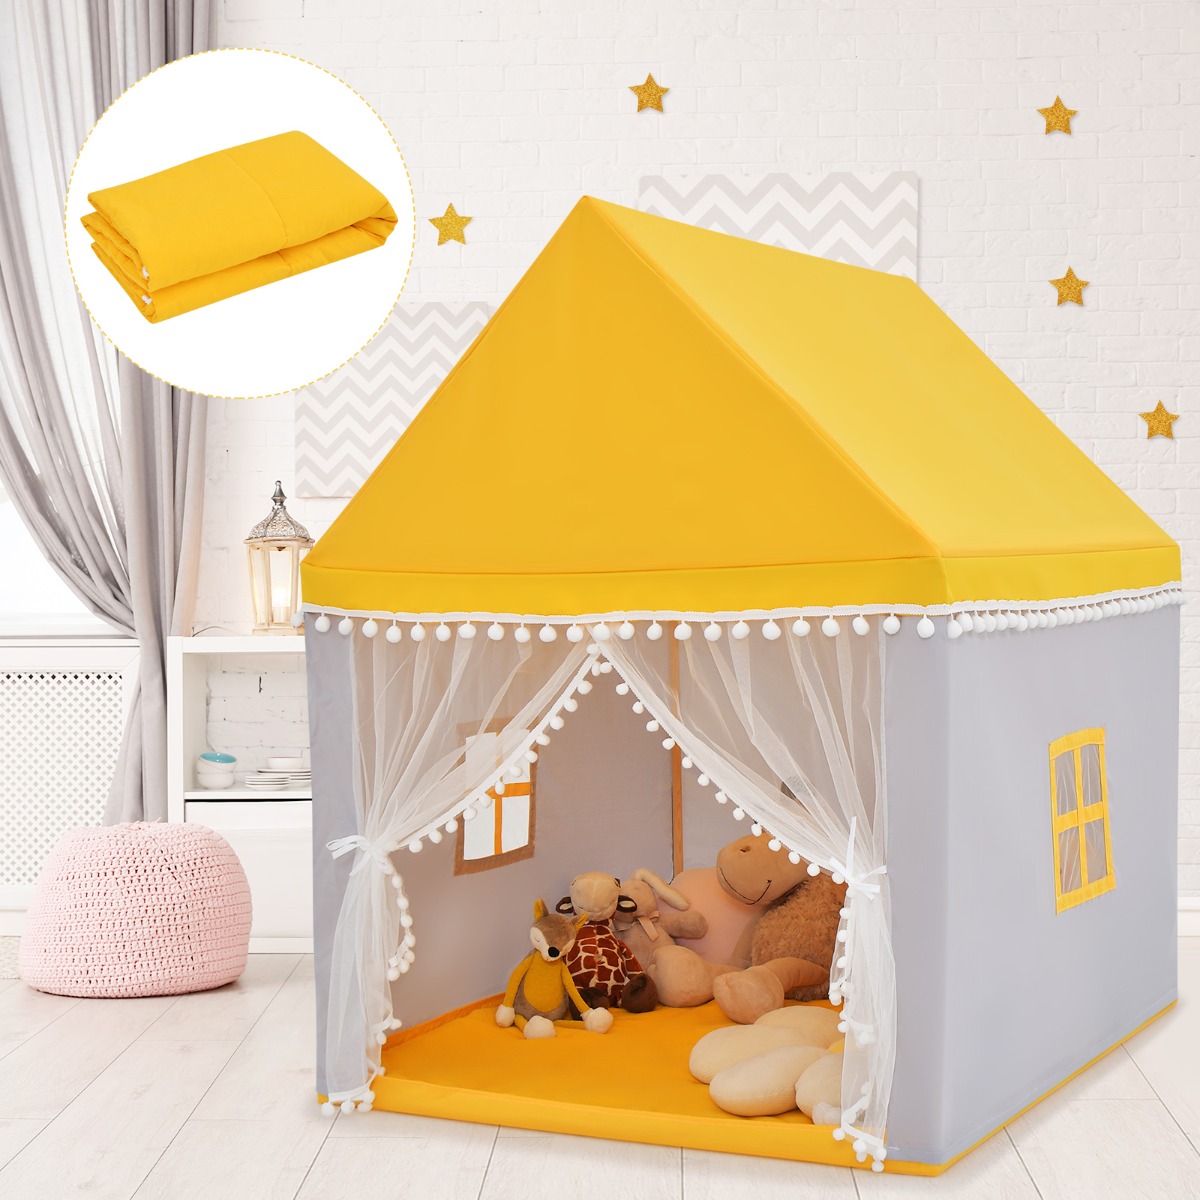 Costway Casetta giocattolo per bambini, Casa grande e resistente con solida struttura di legno Giallo